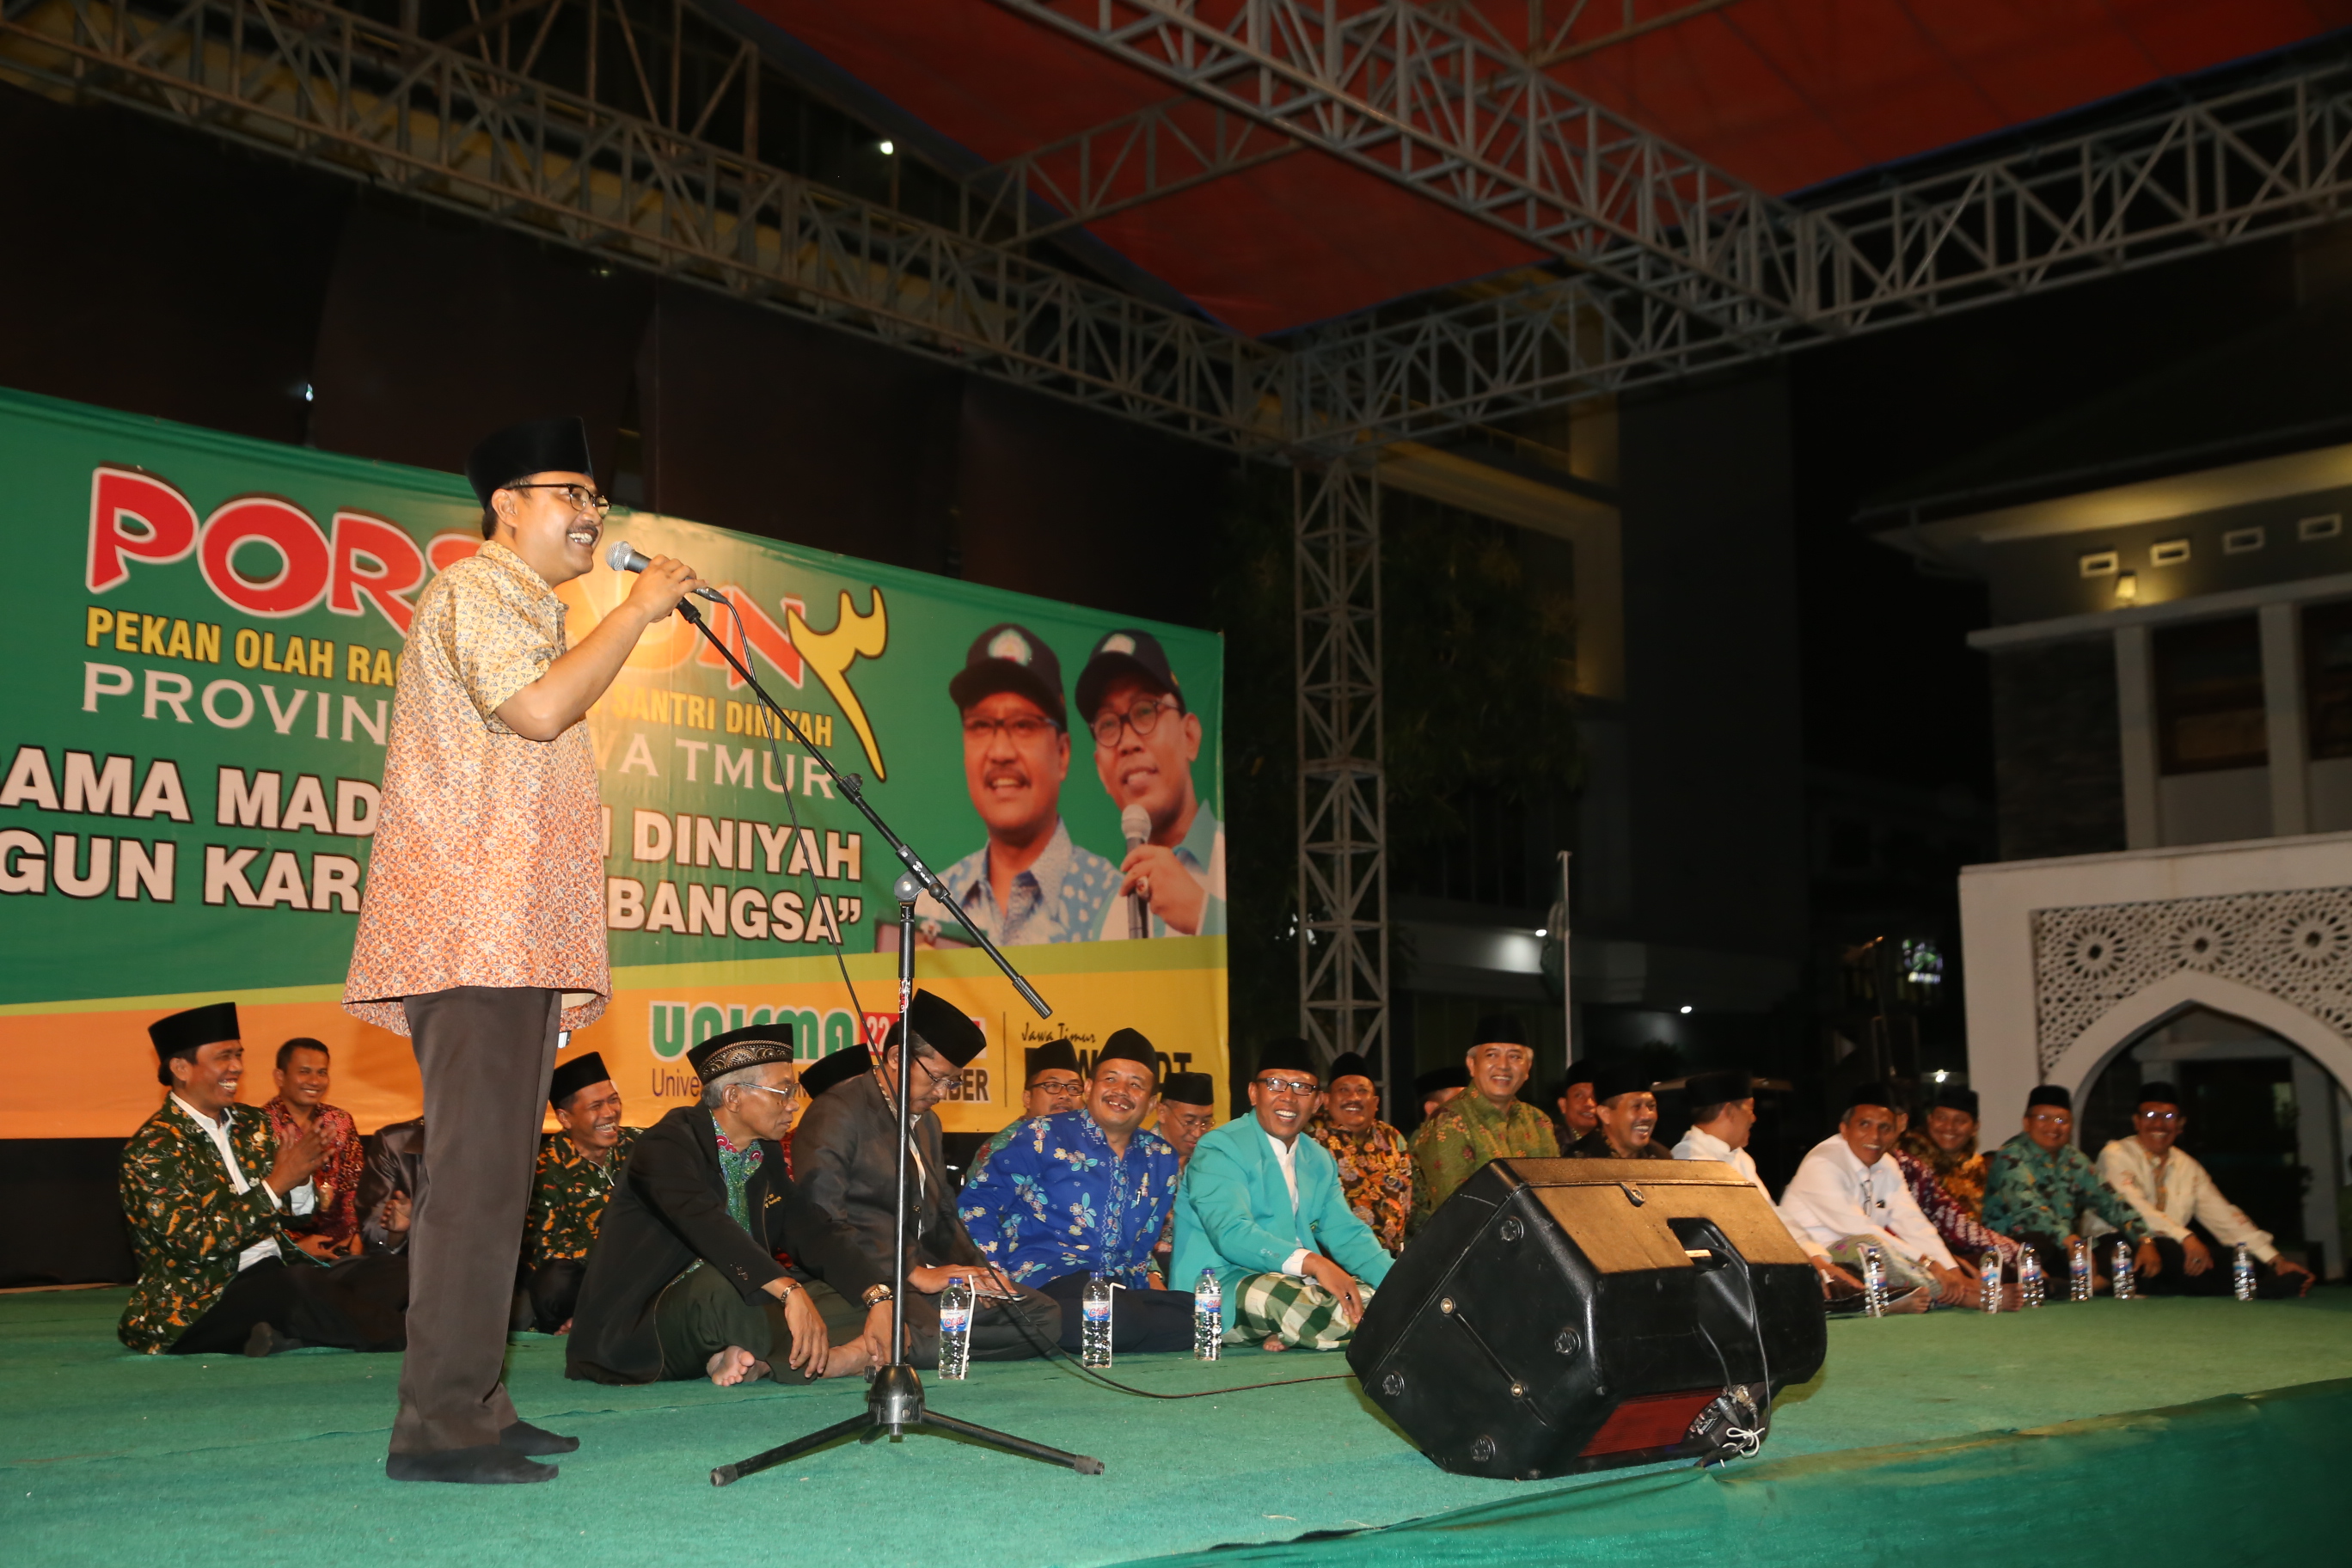 Wagub Jatim Saifullah Yusuf hadiri Pekan Olah Raga dan Seni Santri Diniyah di Unisma Malang Jumat 22 September 2017, malam. (Foto: Humas Pemprov)